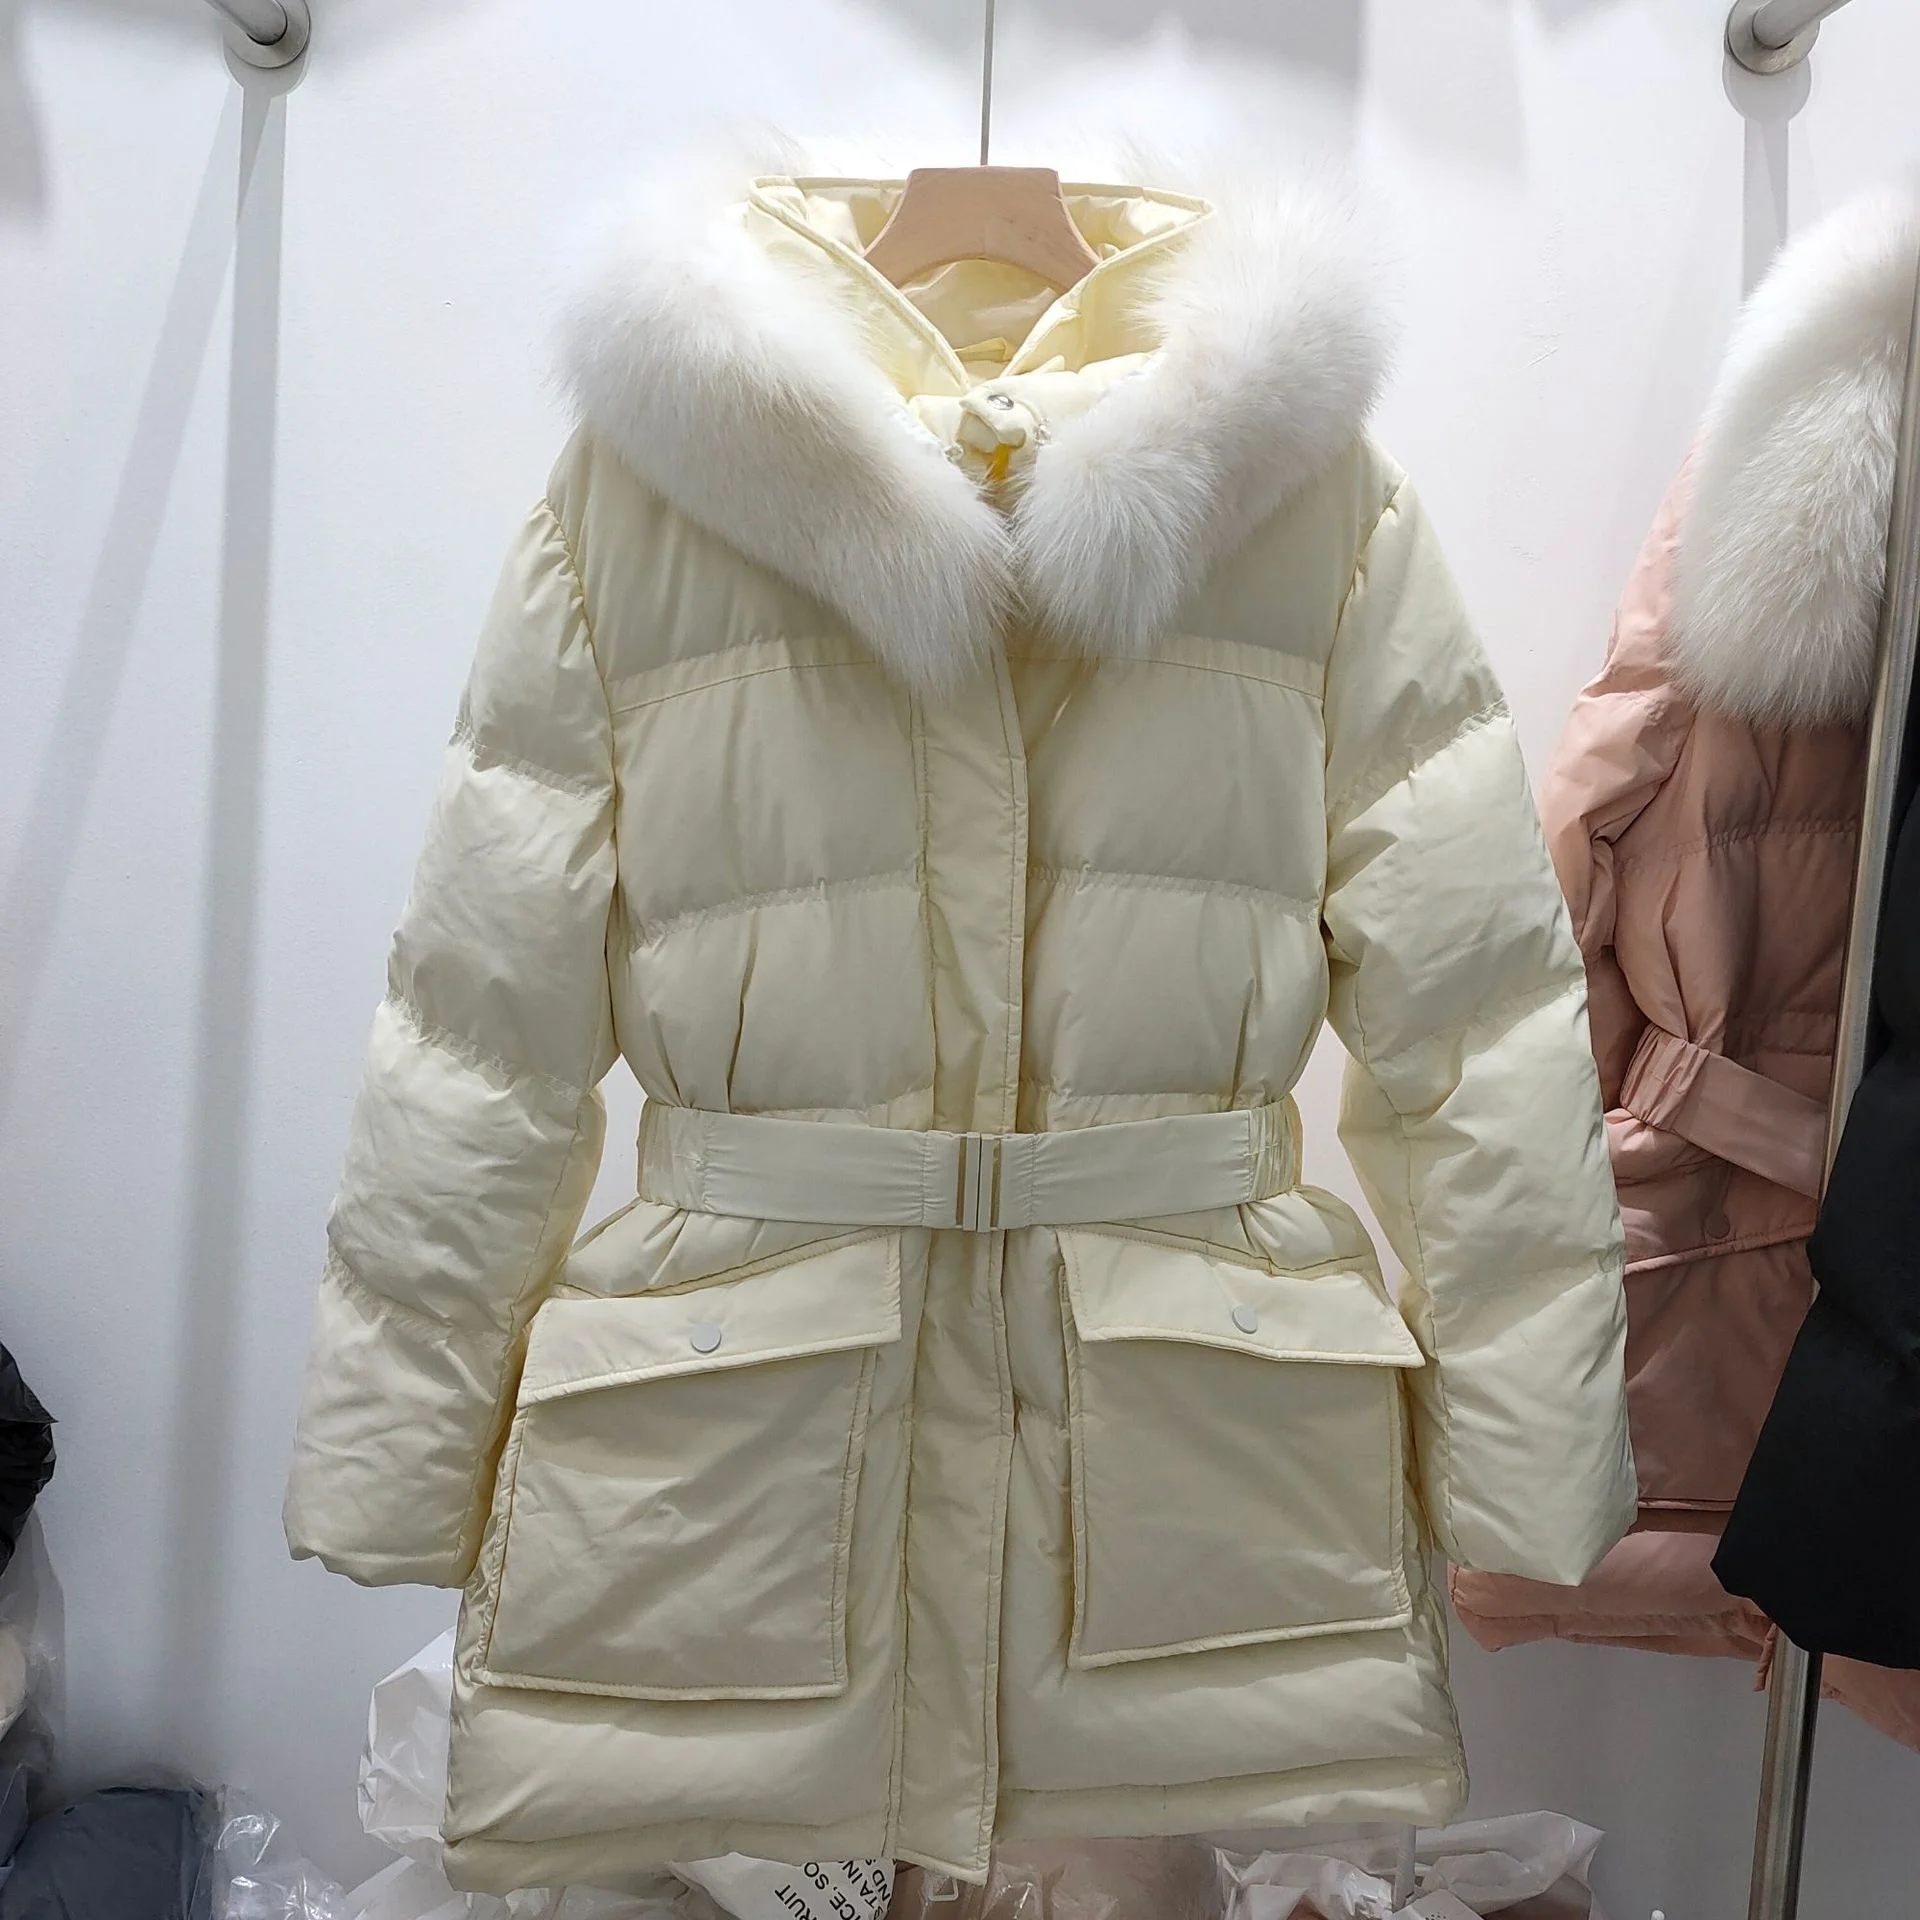 Kore dongdamen 2021 sonbahar ve kış yeni moda aşağı ceket kadın orta ve uzun tarzı ile ince bel ve beyaz ördek 0